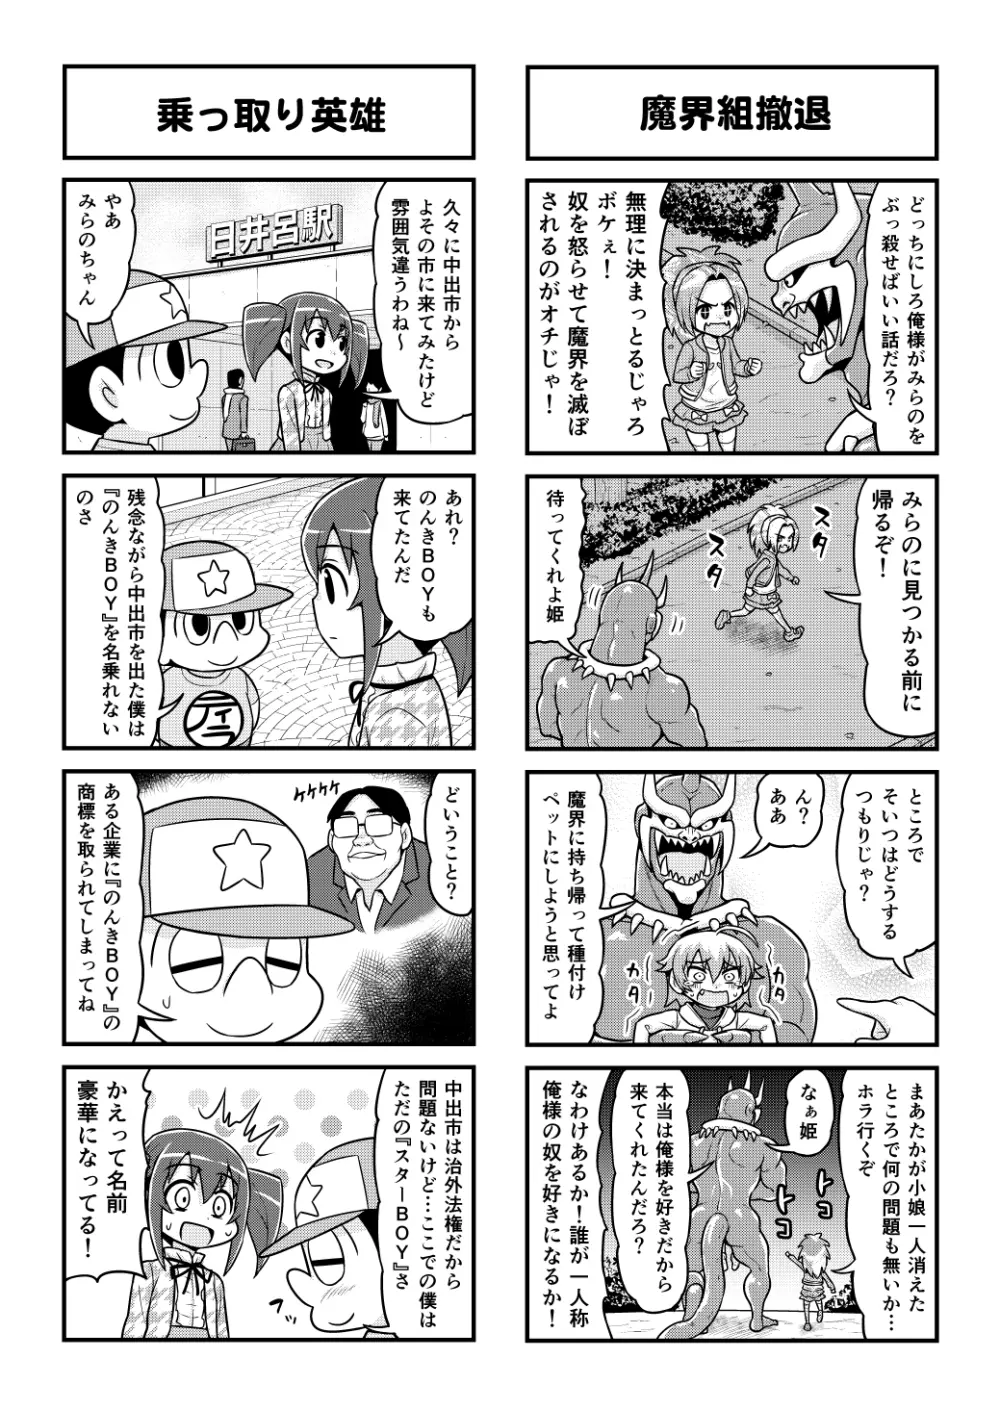 のんきBOY 1-48 - page417